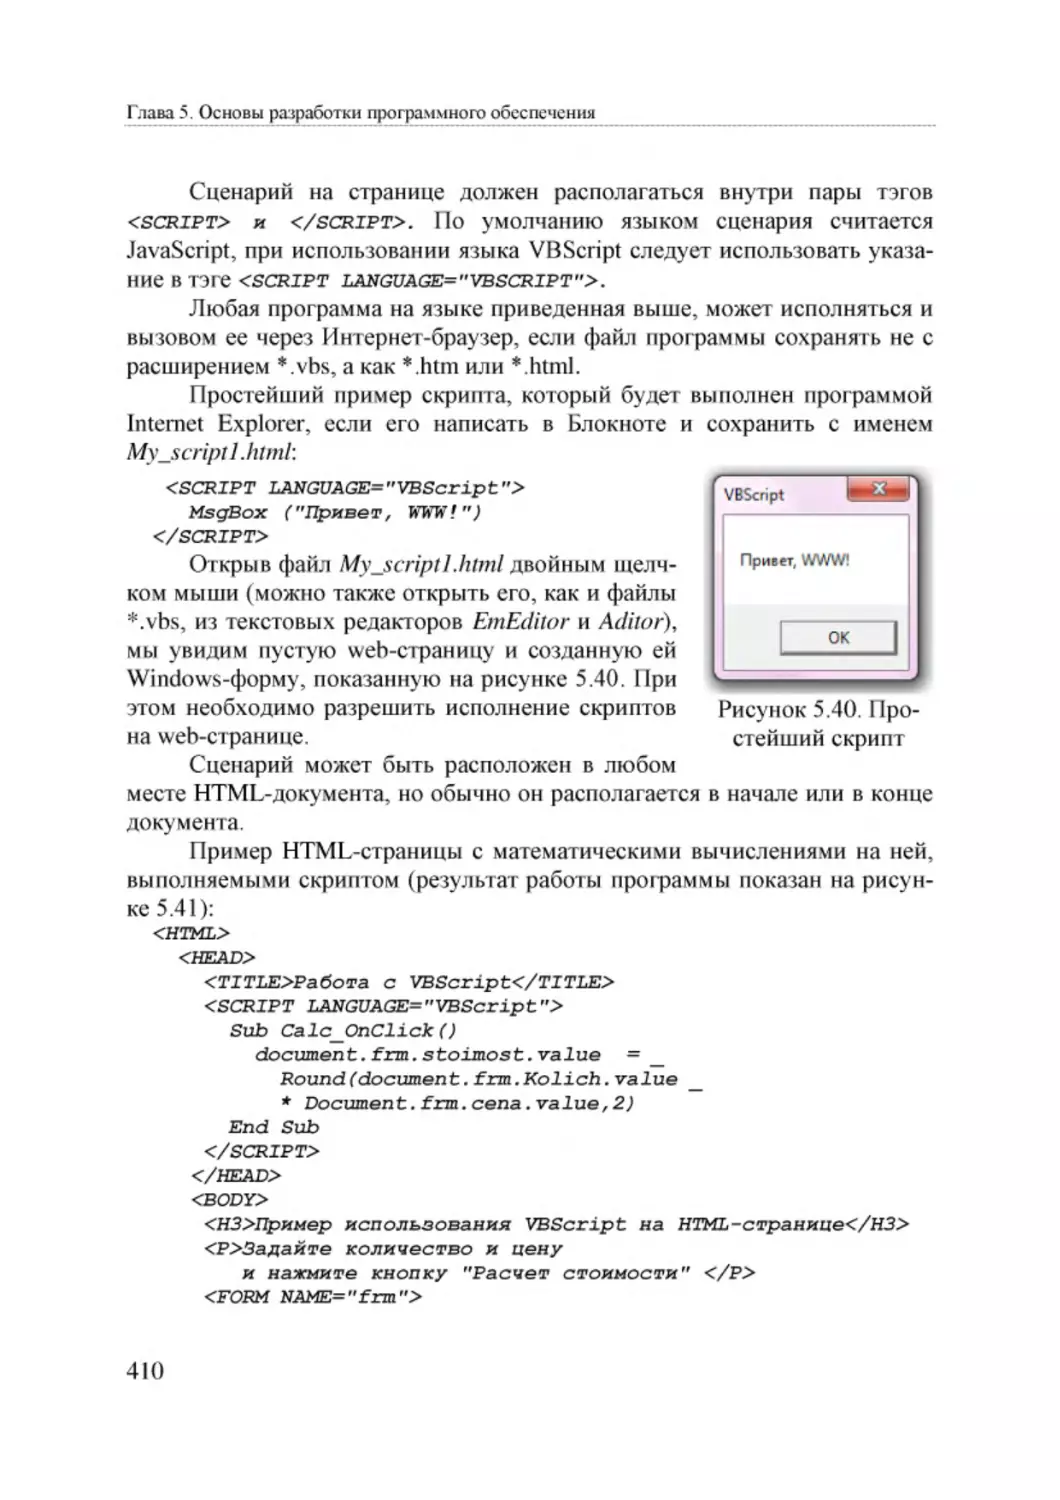 Informatika_Uchebnik_dlya_vuzov_2010 410